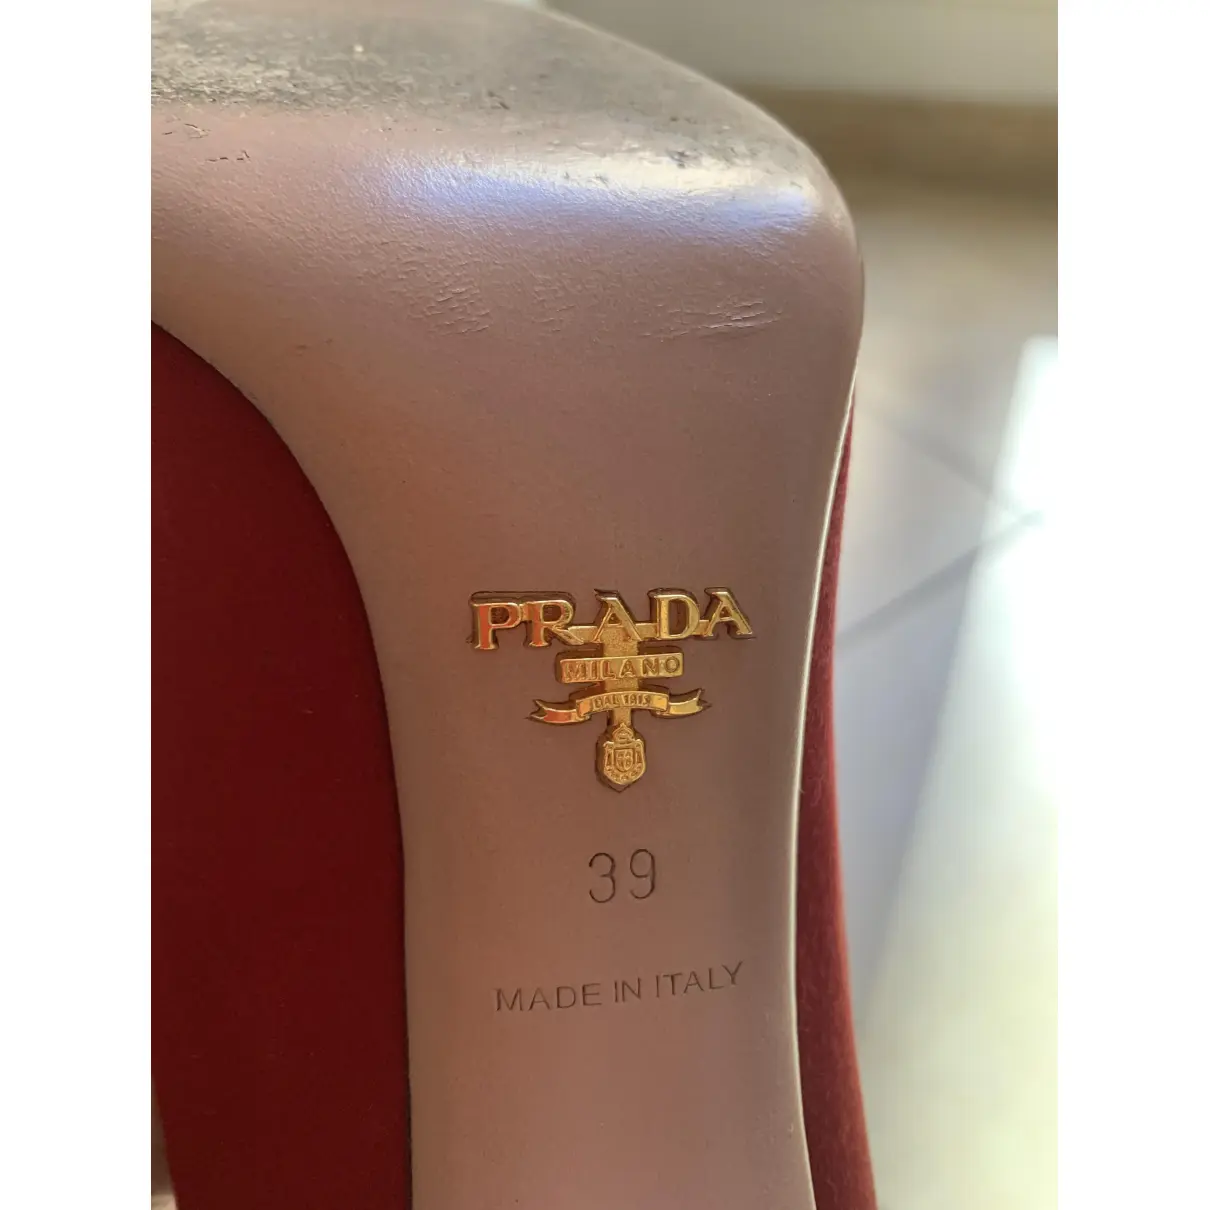 Luxury Prada Heels Women